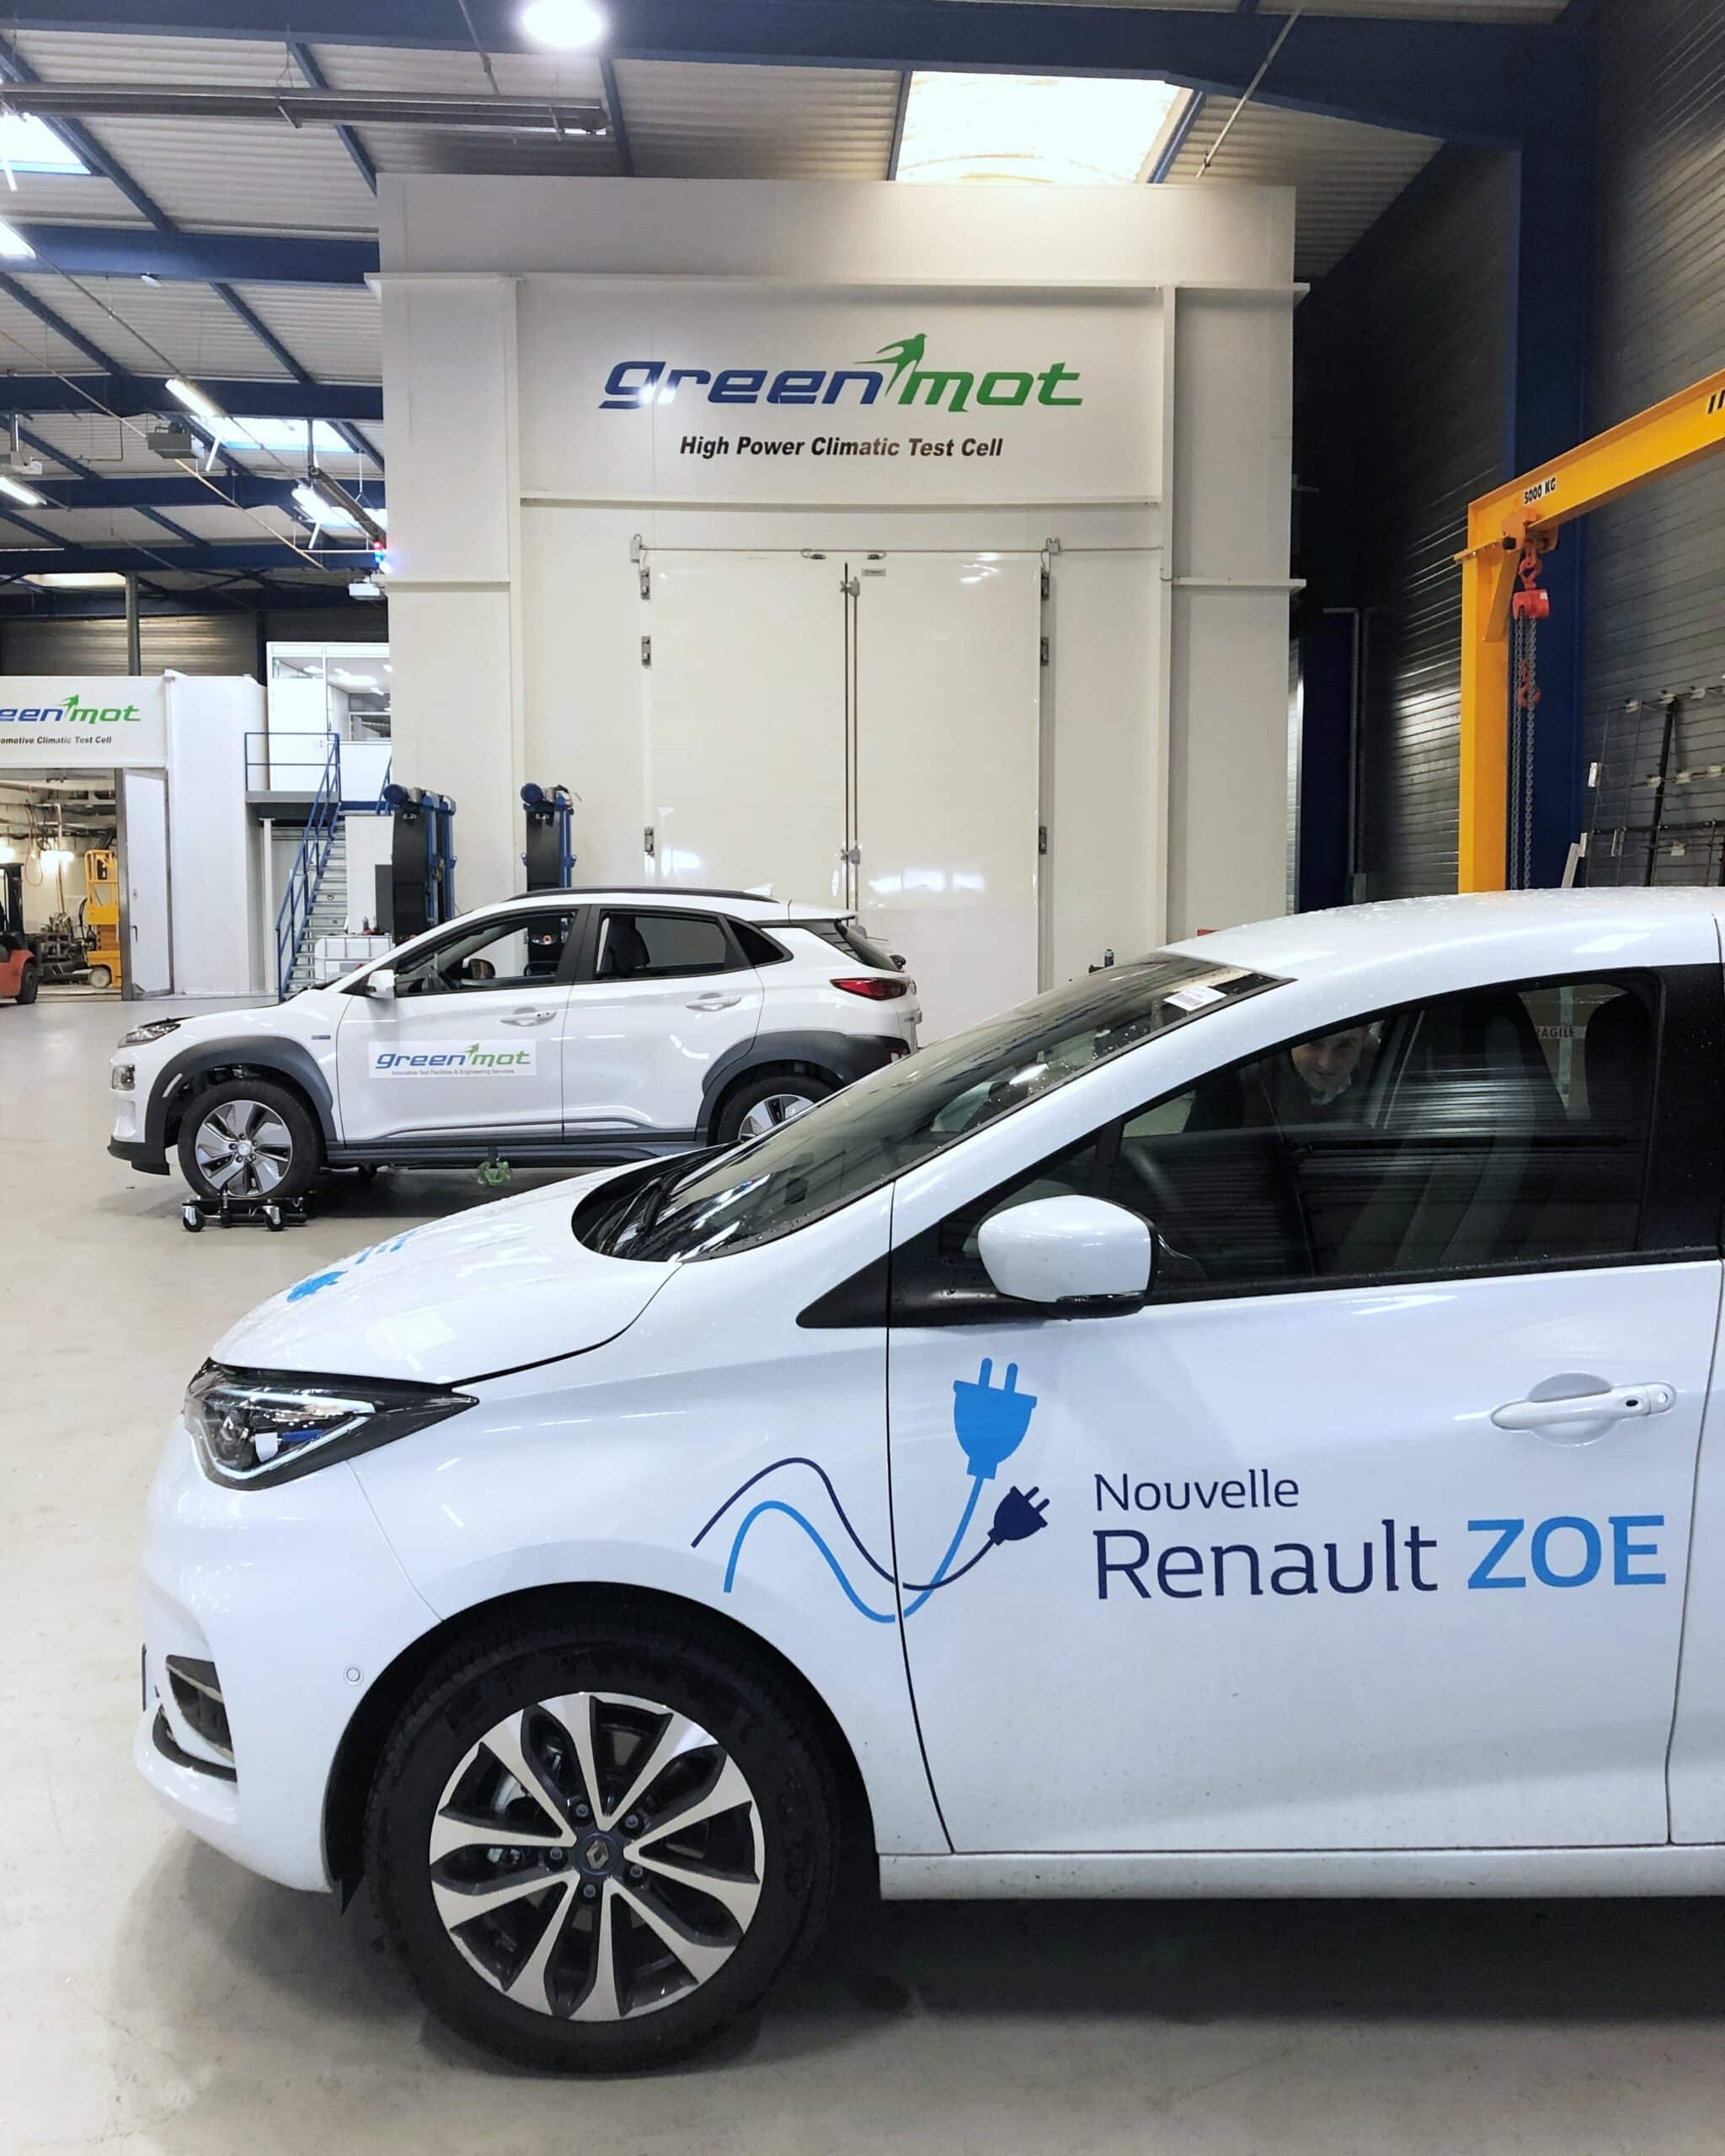 Renault Group zoe atelier centre essais greenmot